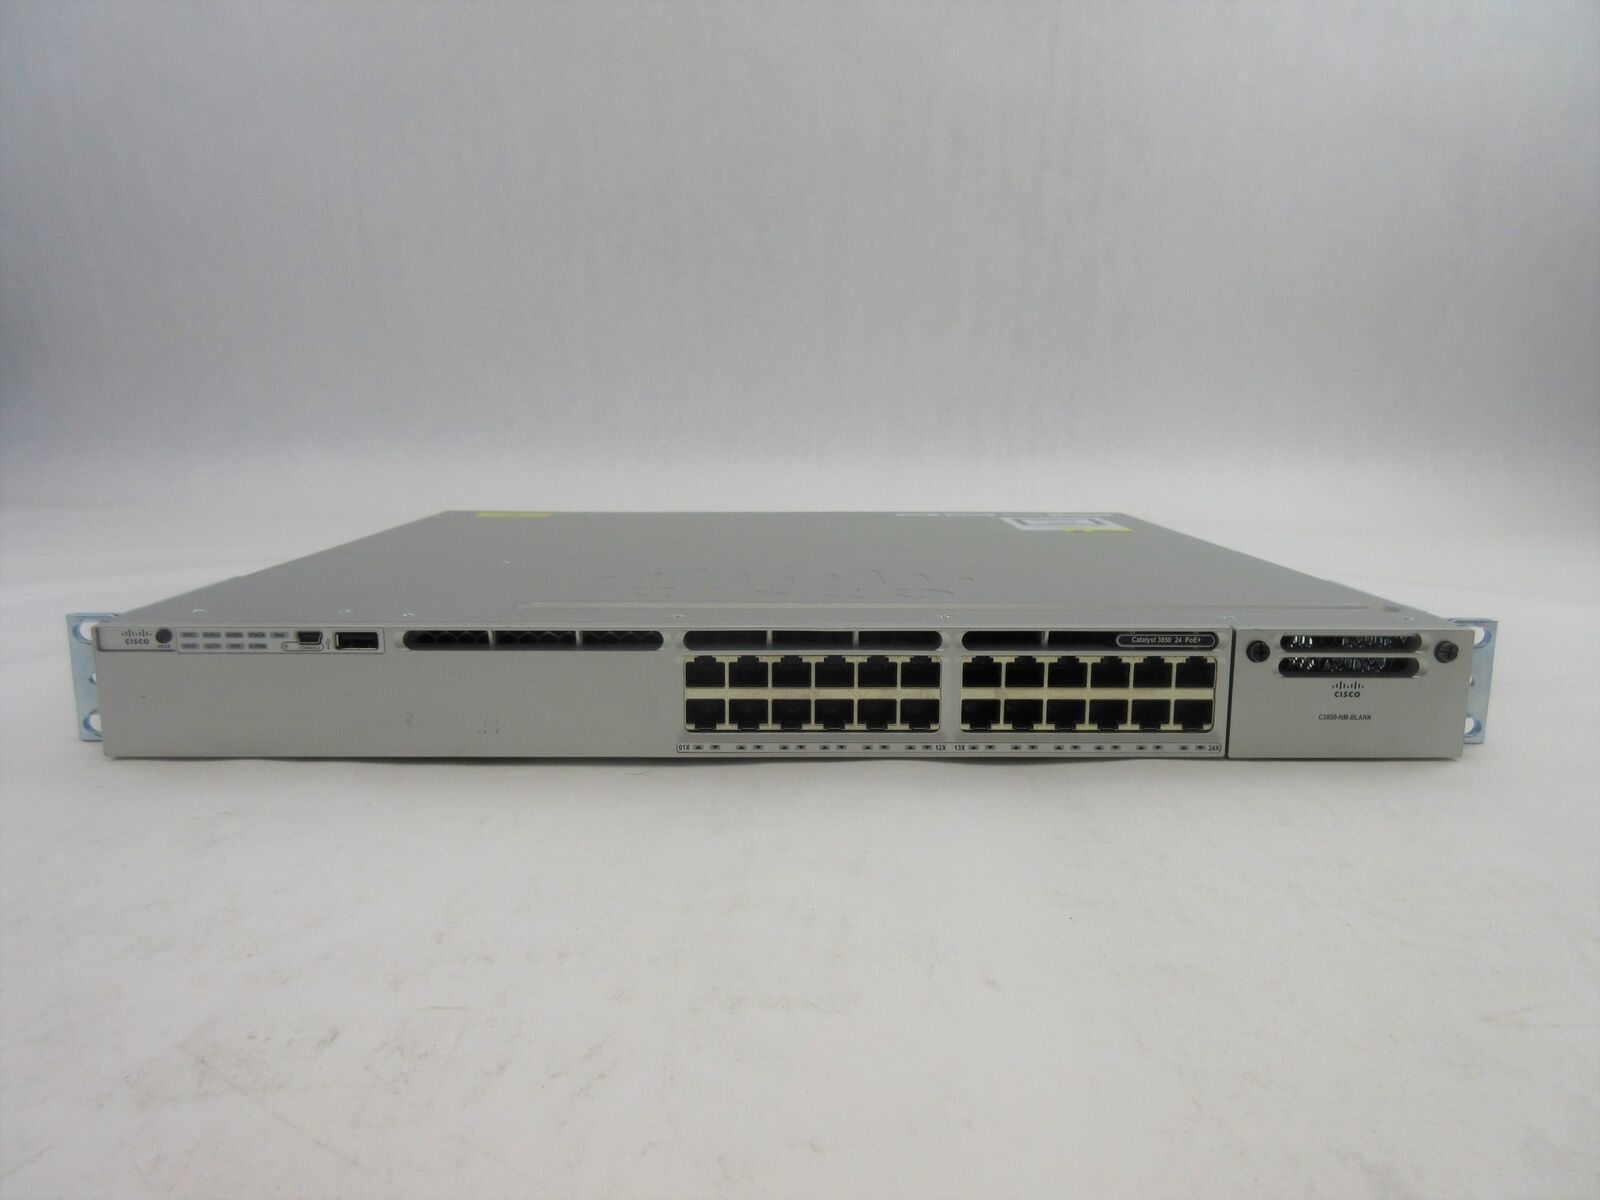 Cisco 3850 Series 24 Port POE+ Network Switch, WS-C3850-24P-S, C4*243